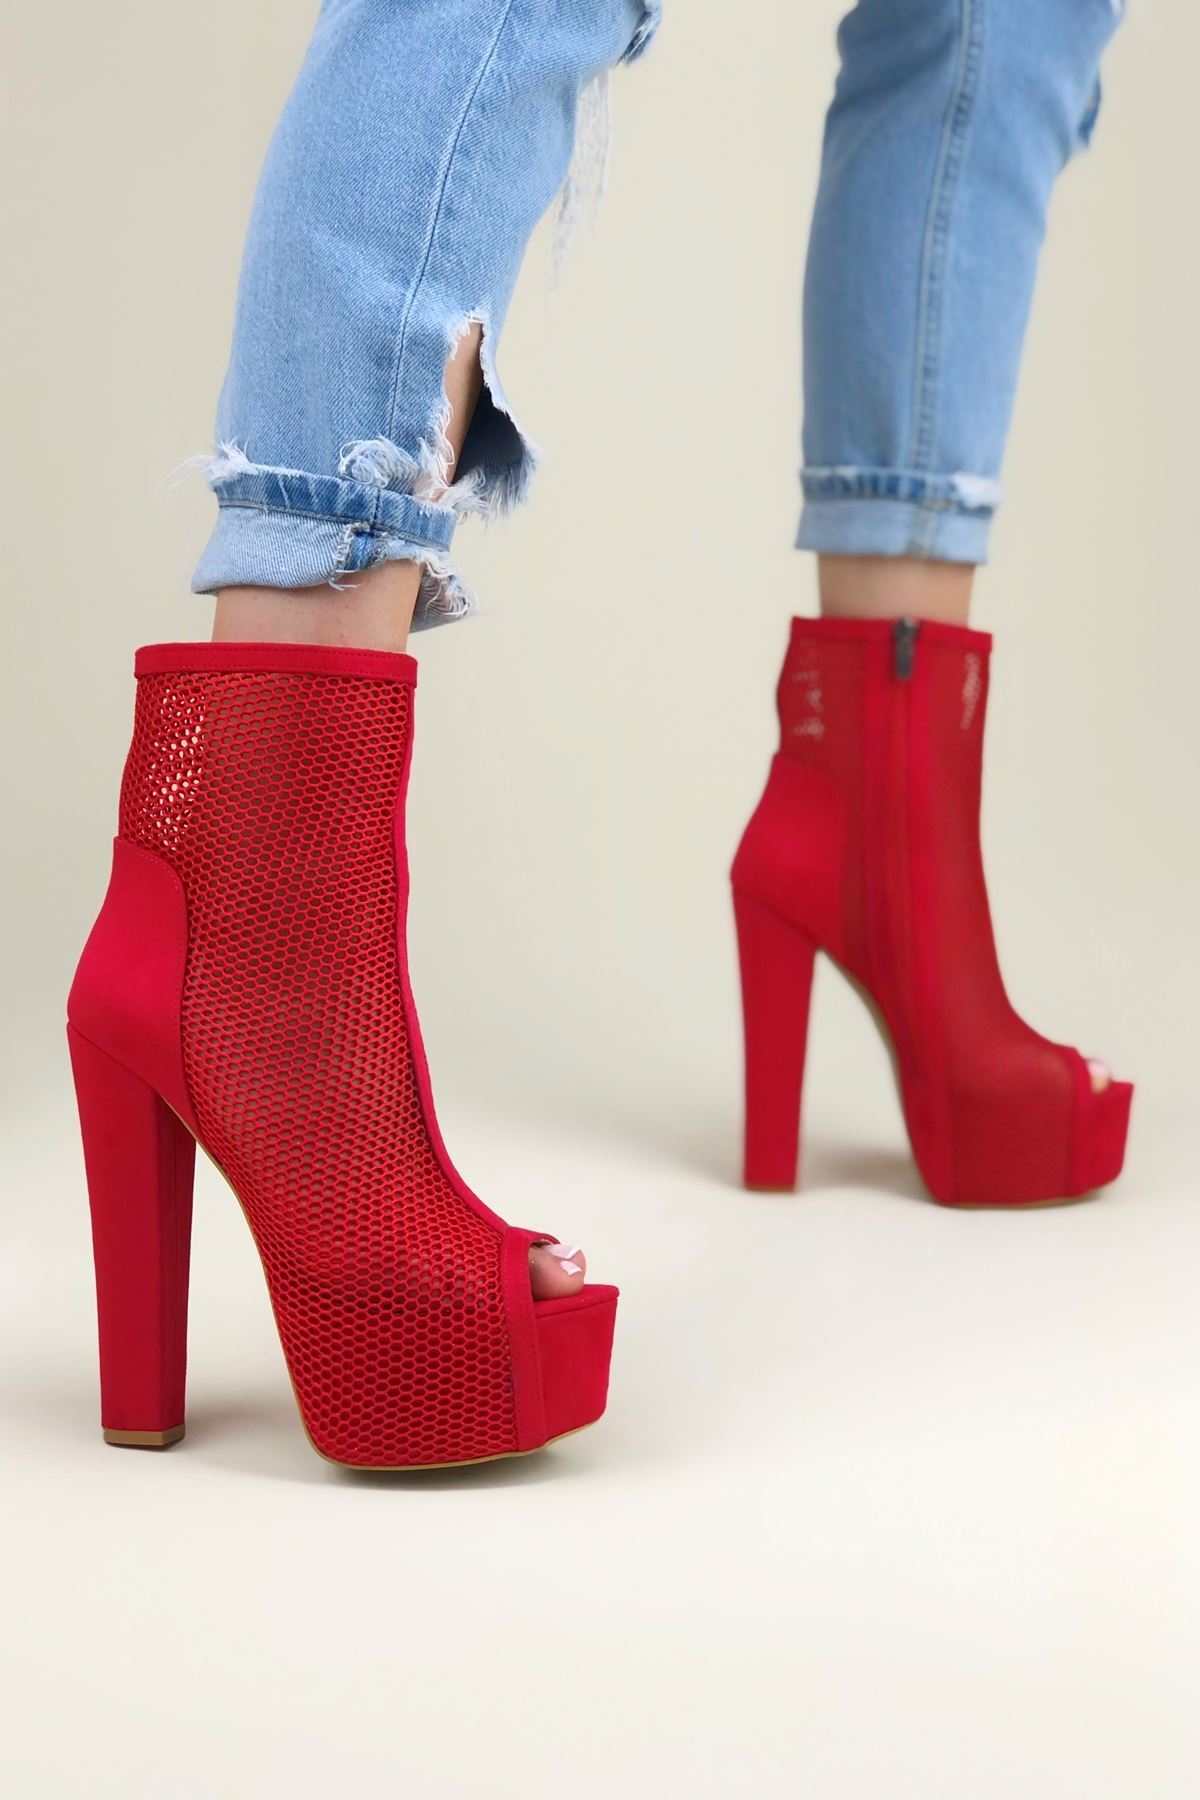 Yoko Kırmızı Süet Kırmızı File Kadın Platform Ayakkabı